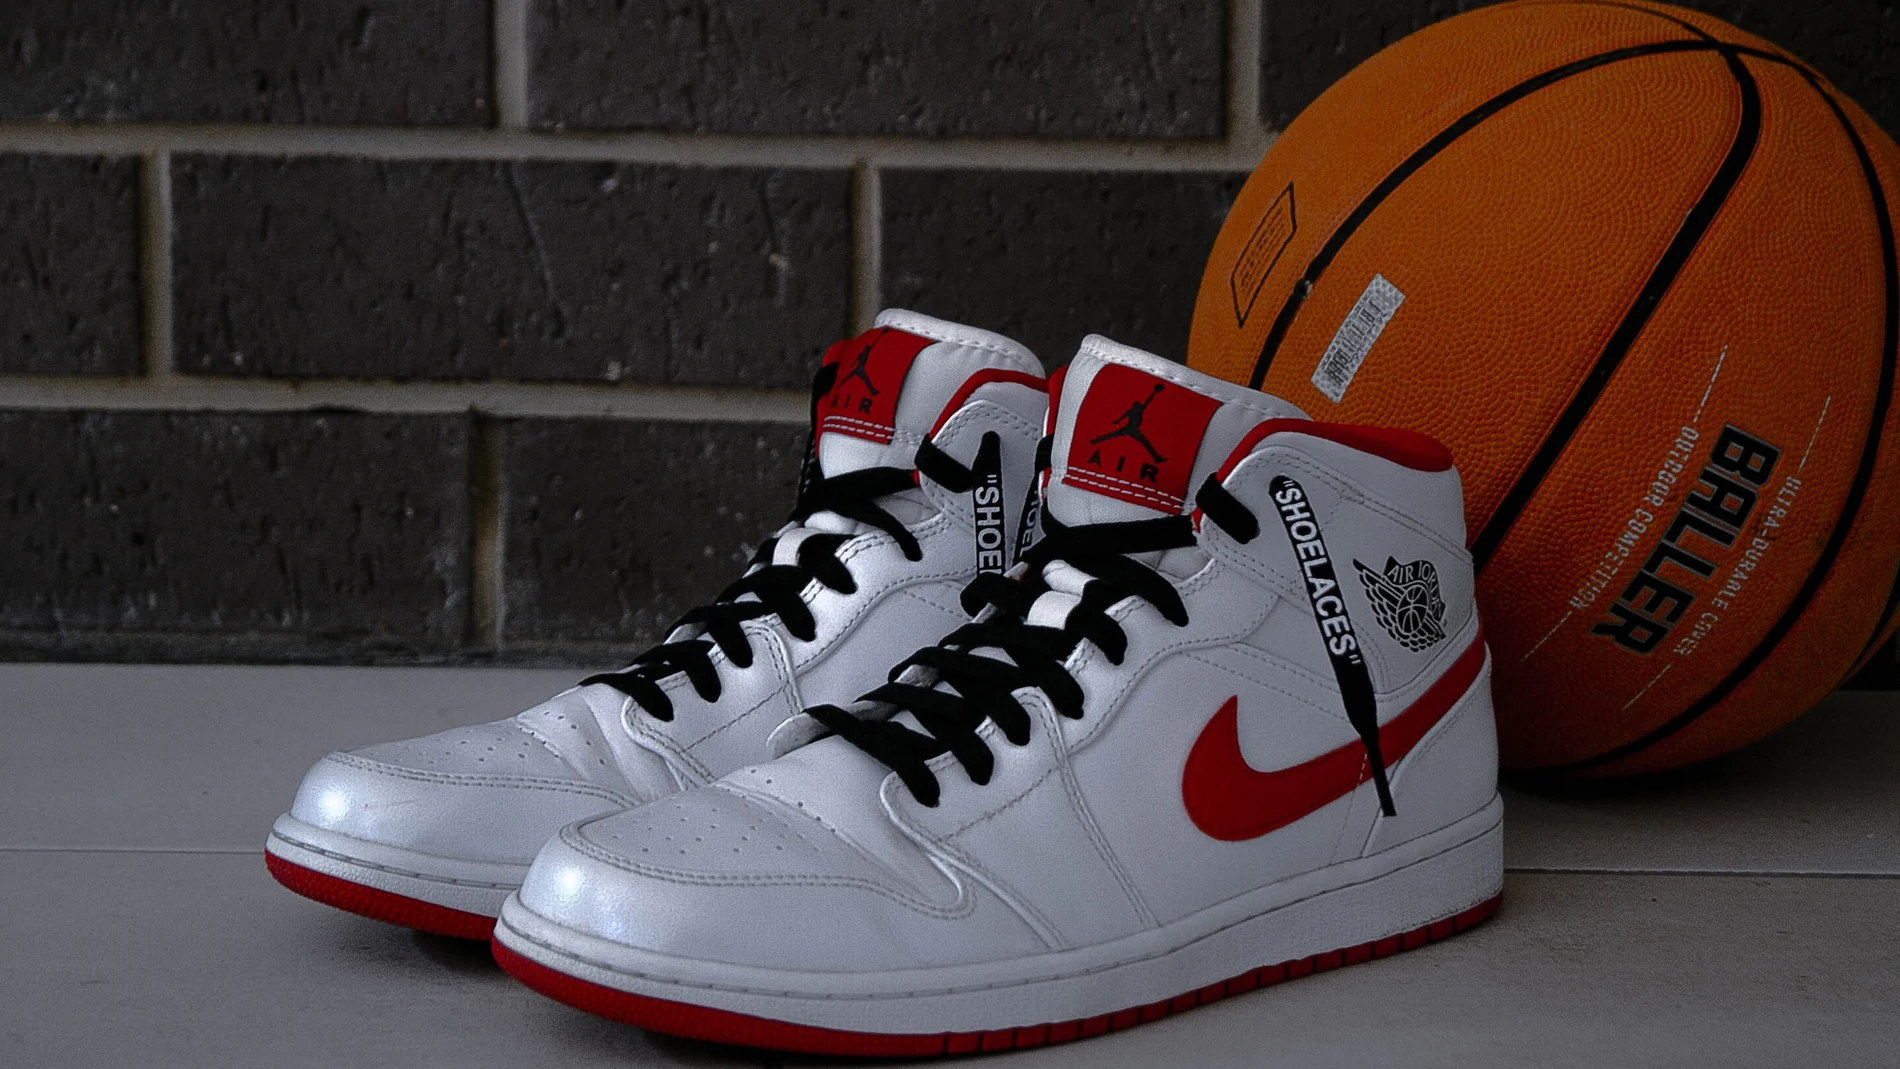 Se subastan míticas zapatillas blancas y rojas de Michael Jordan con su firma: esta es la polémica las hizo tan